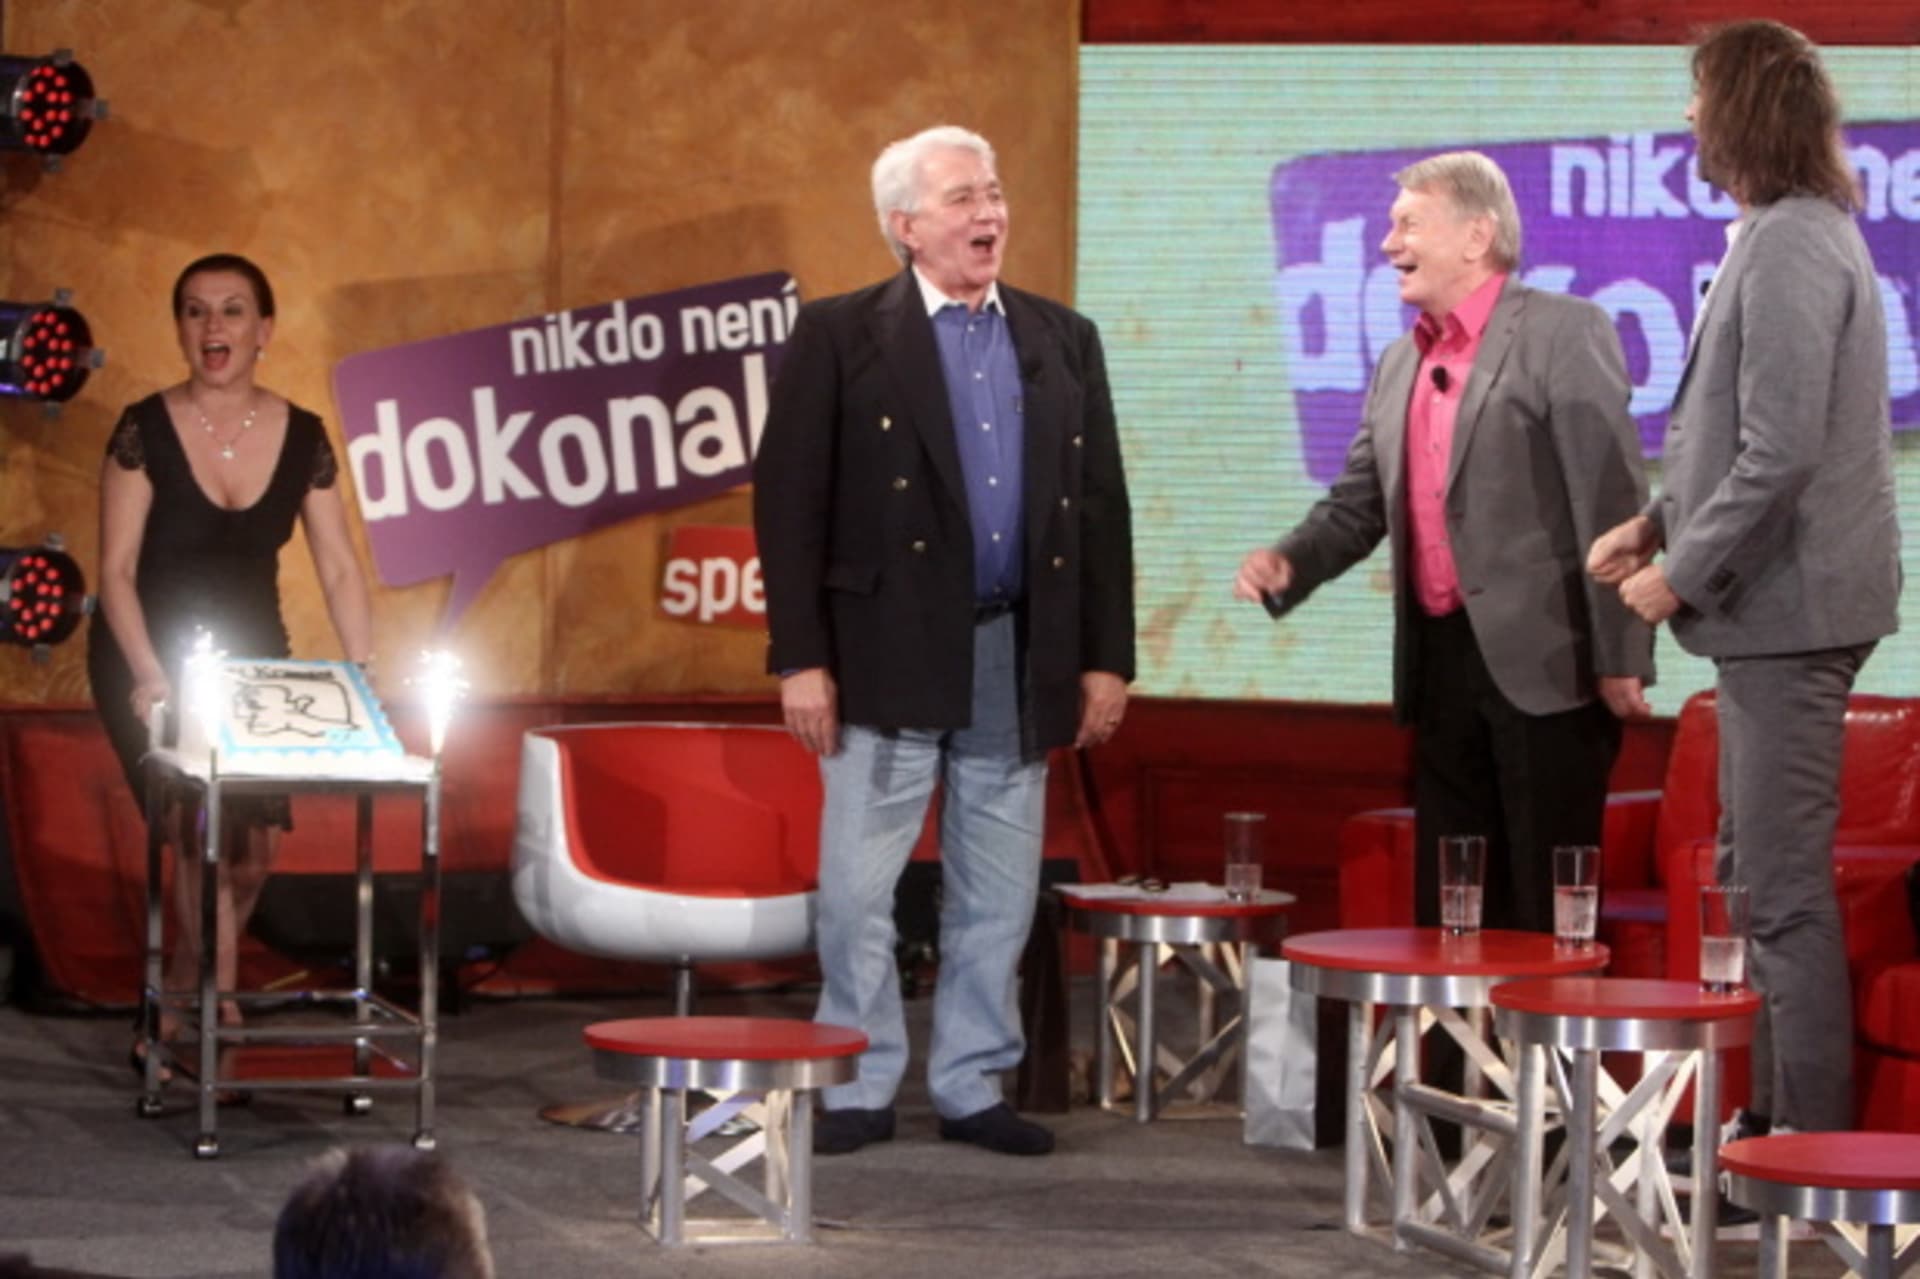 Nikdo není dokonalý 10. 7. 2013 – Dana Morávková, Jiří Krampol, Josef Dvořák a Jakub Kohák